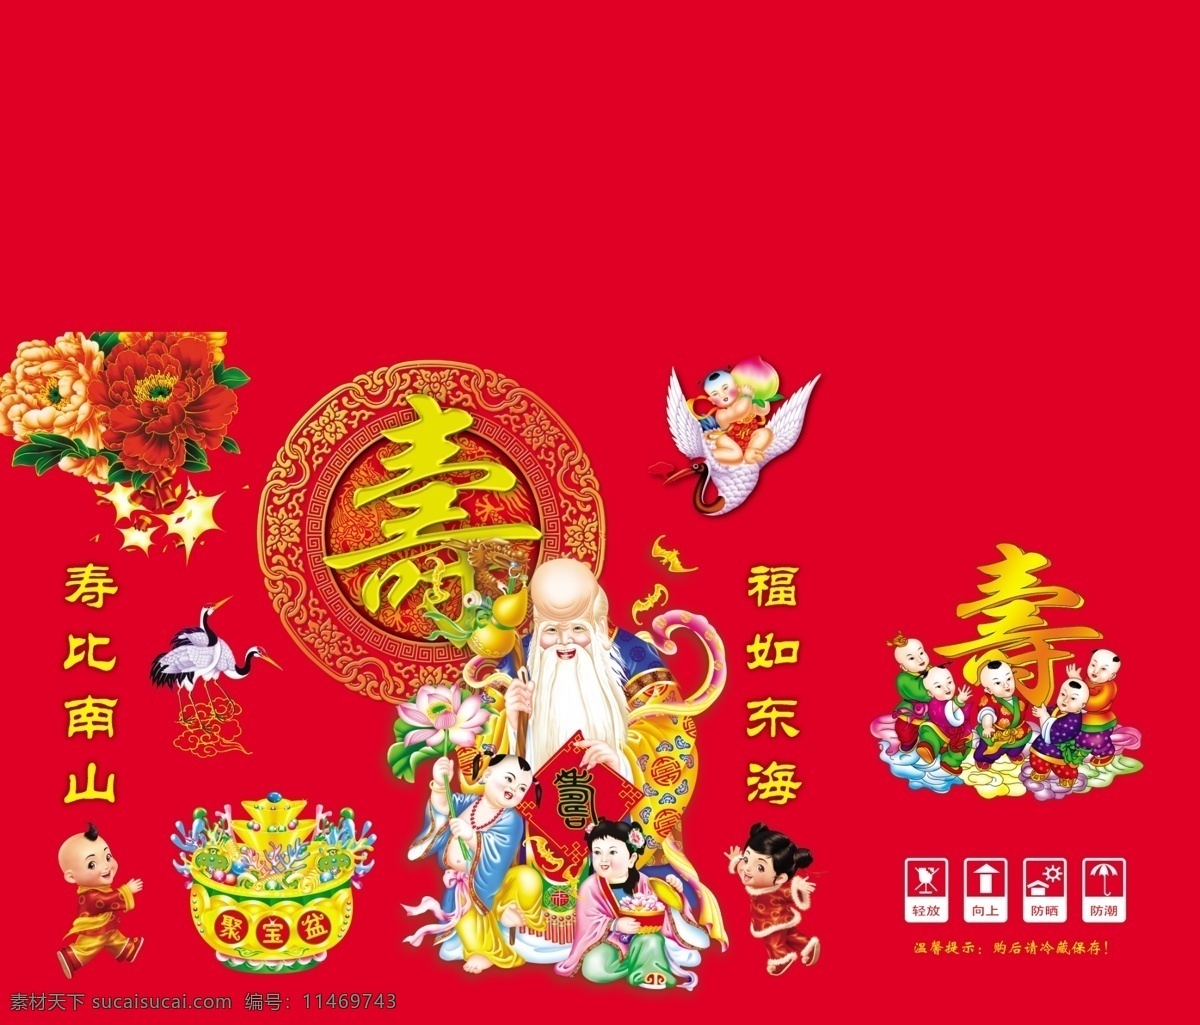 福寿 瓦楞 盒 展开 图 福 寿 瓦楞盒 红色底 传统图案 吉祥 寿星 福娃 白鹤 红花 聚宝盆 包装设计 分层